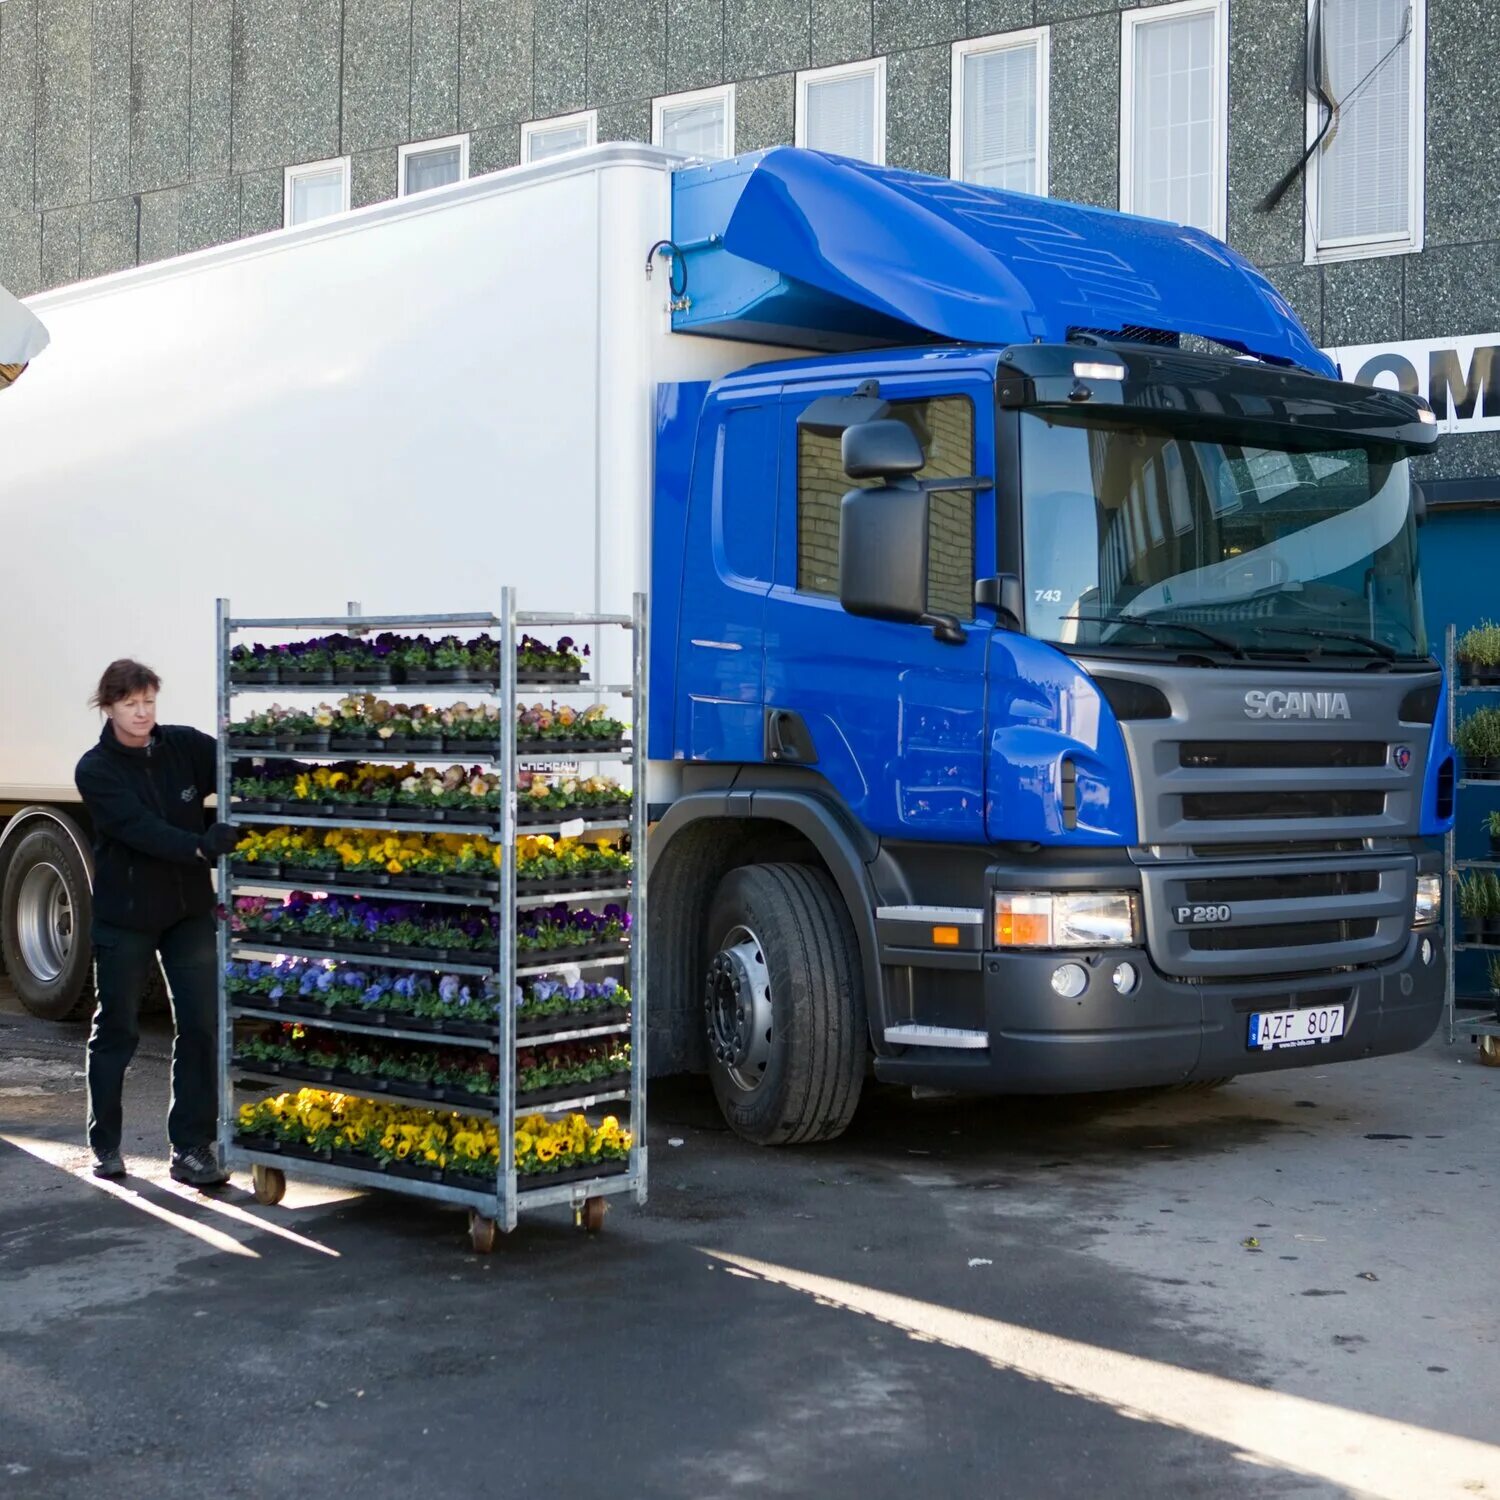 Перевозка грузов магазины. Scania p280 4x2. Грузовые машины для перевозки грузов. Фура для перевозки продуктов. Перевозка цветов рефрижераторами.